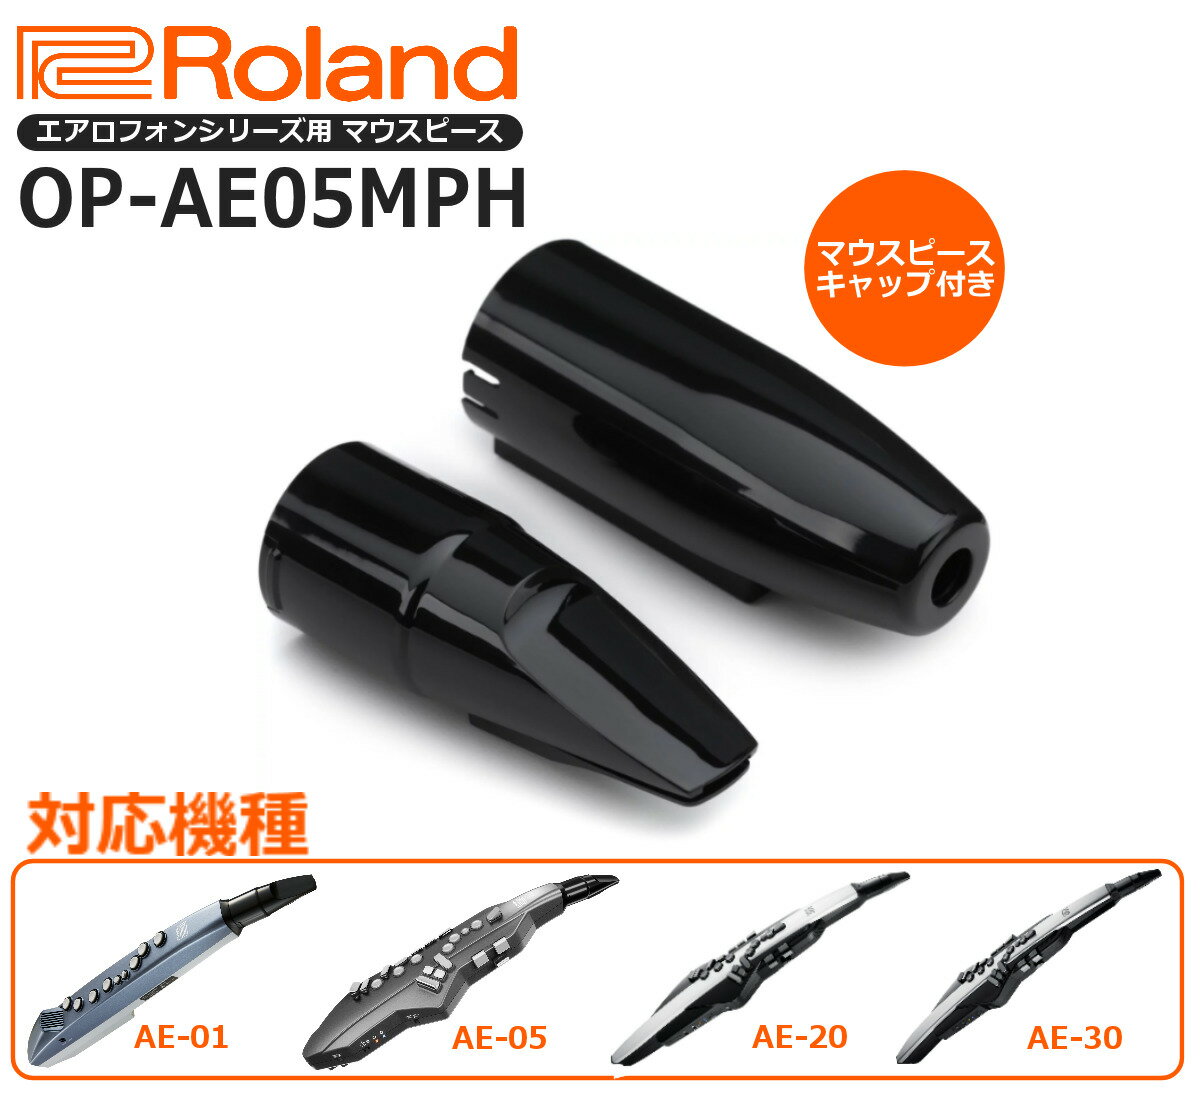 【あす楽対応】【マウスピースカバー付き】Roland ローランド Aerophone エアロフォン 交換用マウスピース Replacement Mouthpiece OP-AE05MPH【AE-01 / AE-05 / AE-20 / AE-30対応 】